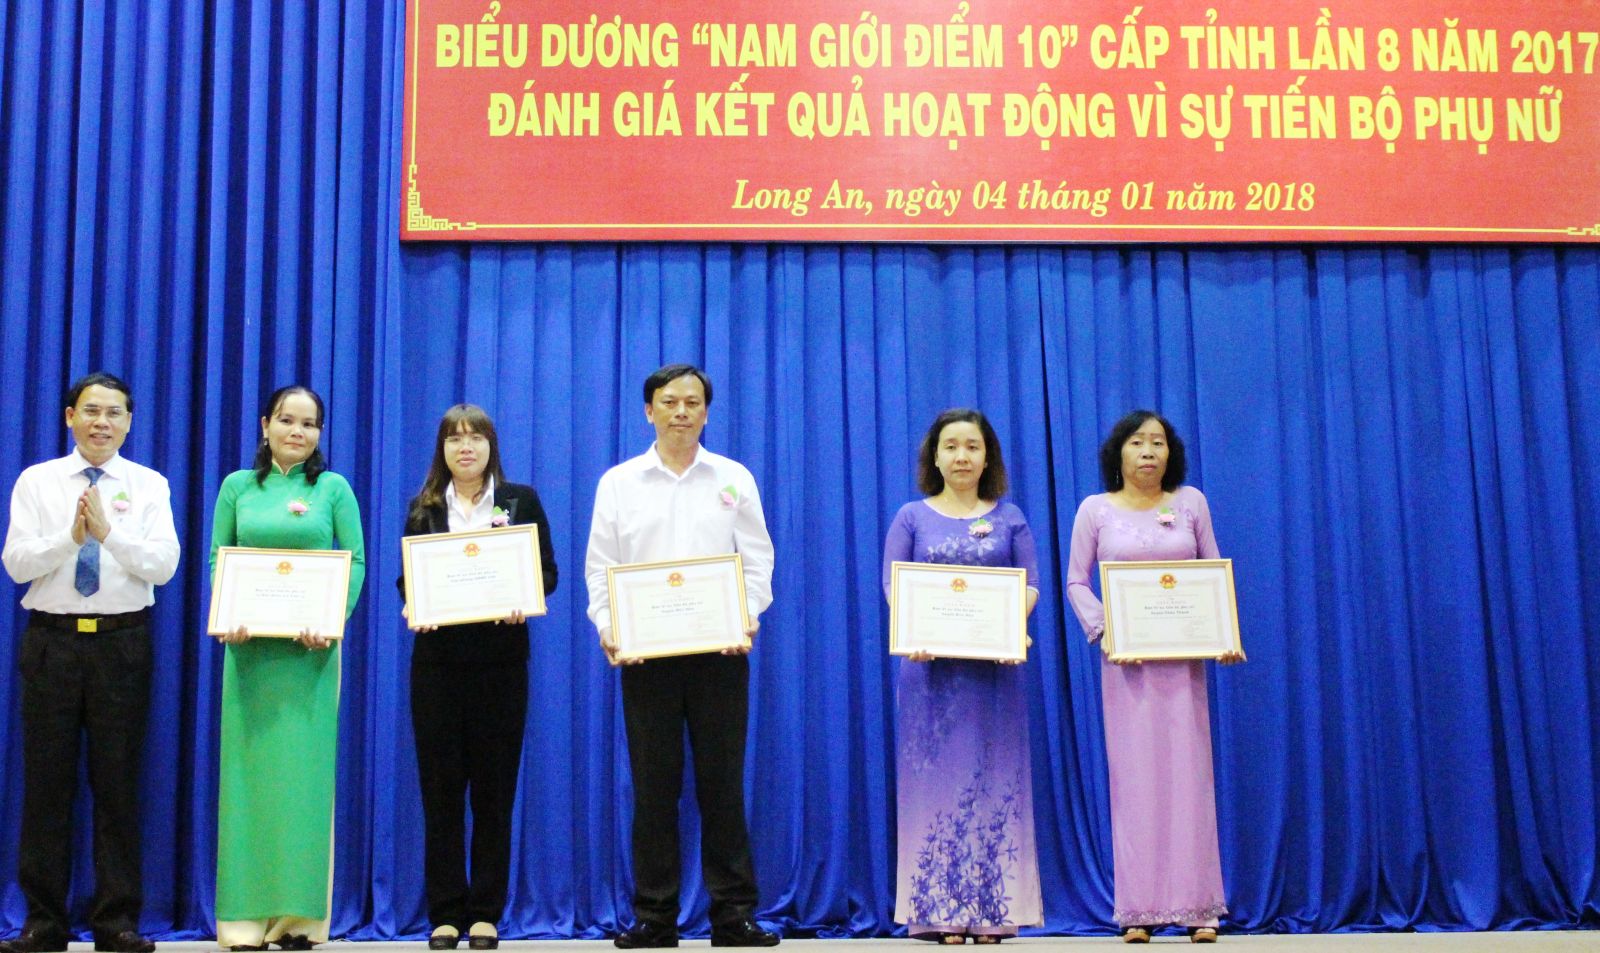 Phó Chủ tịch UBND tỉnh – Hoàng Văn Liên trao thưởng cho các Ban Vì sự tiến bộ phụ nữ thực hiện tốt mô hình Nam giới điểm 10 